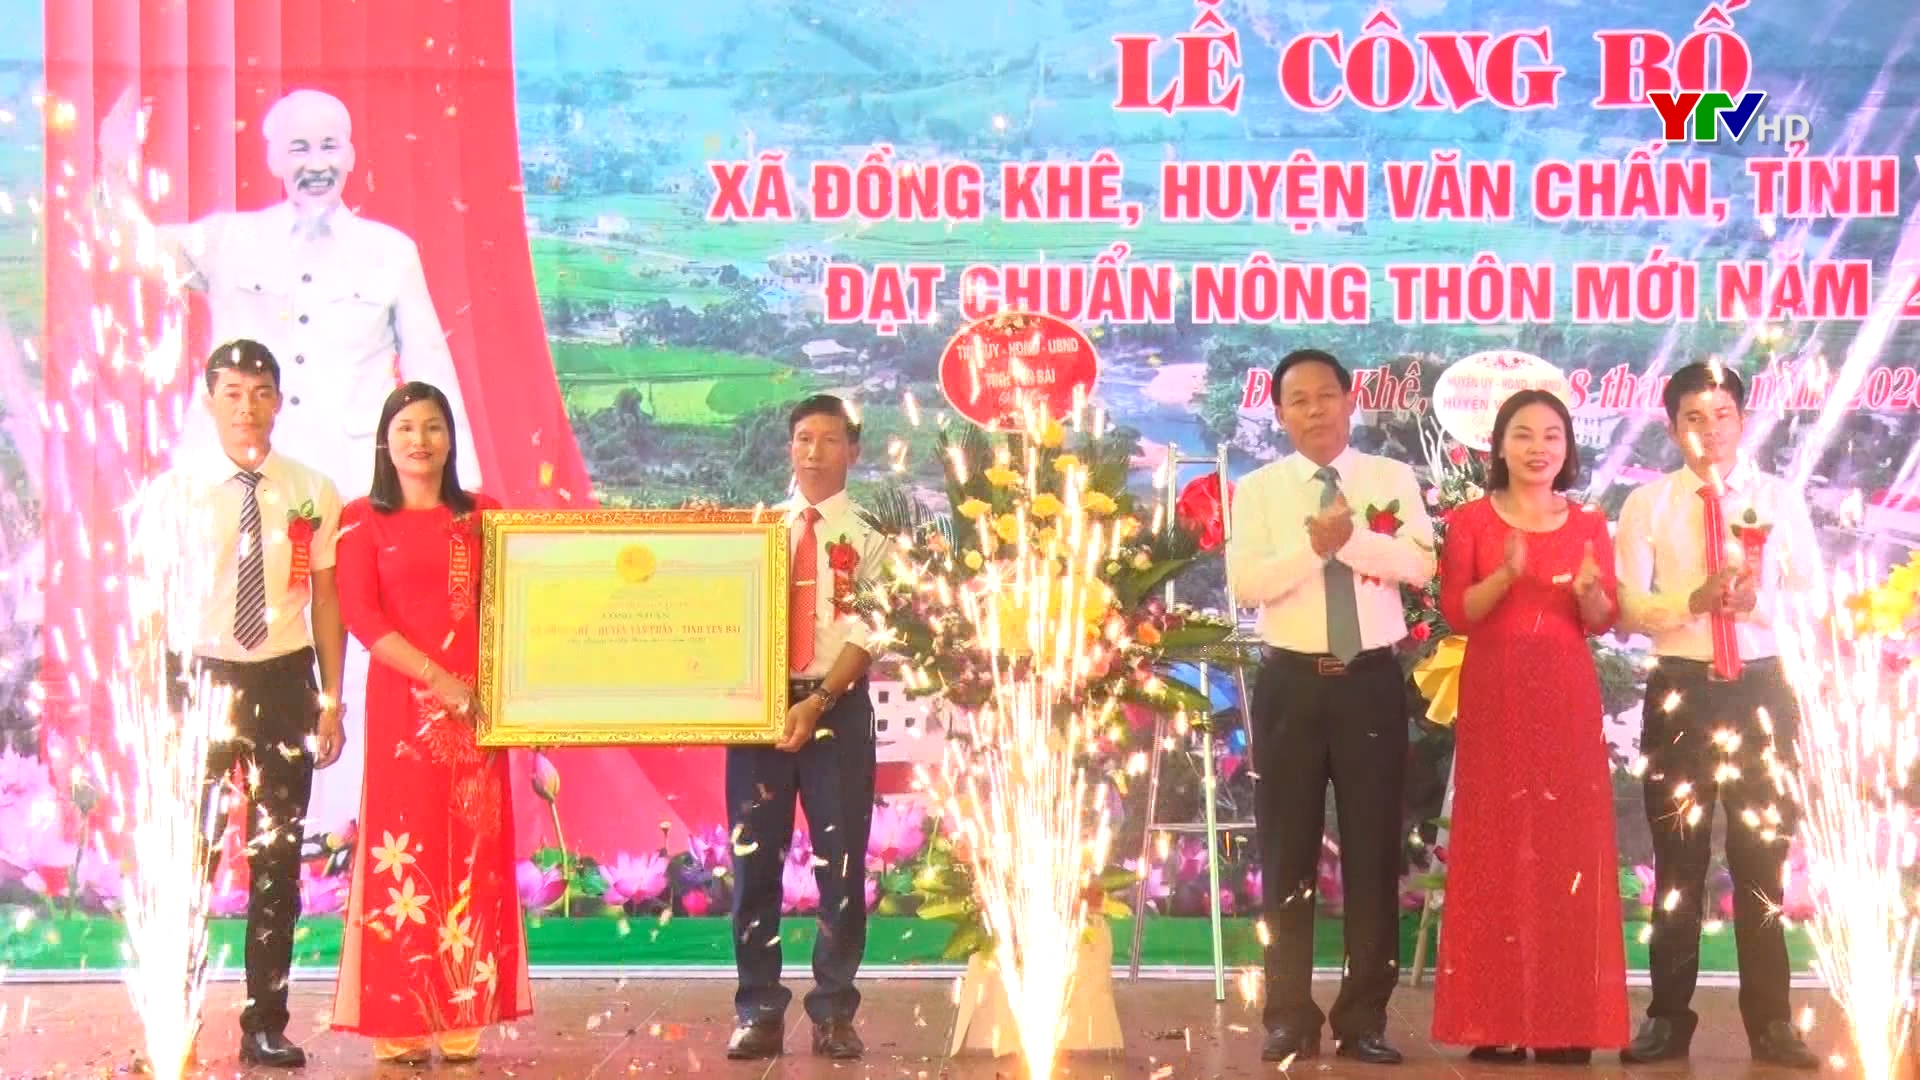 Xã Đồng Khê, huyện Văn Chấn đạt chuẩn nông thôn mới năm 2020